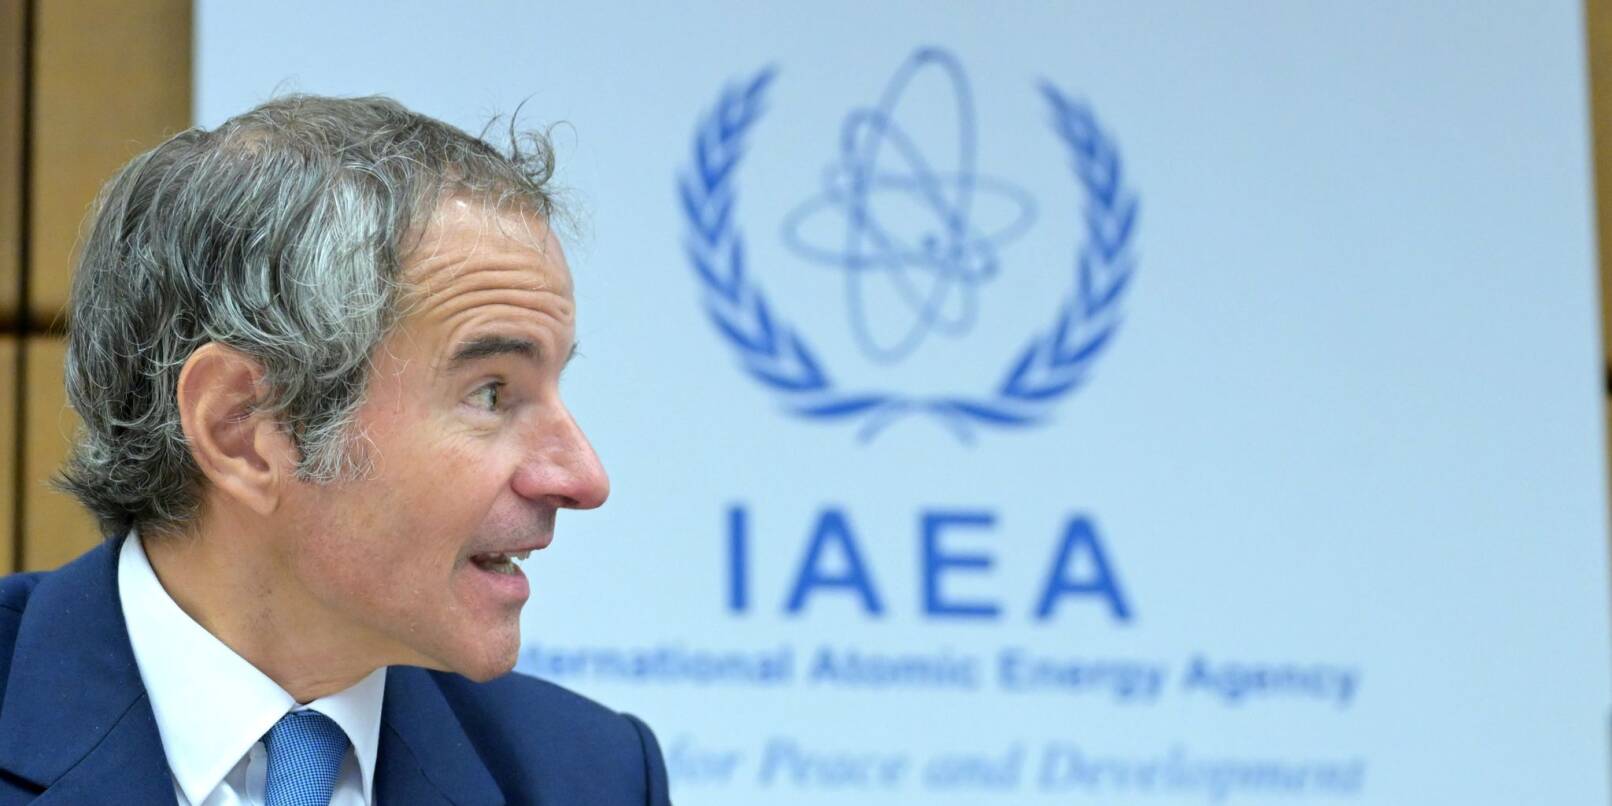 IAEA-Chef Rafael Mariano Grossi will nach Moskau reisen, um mit Wladimir Putin über die Sicherheitslage des Atomkraftwerks Saporischschja zu sprechen.